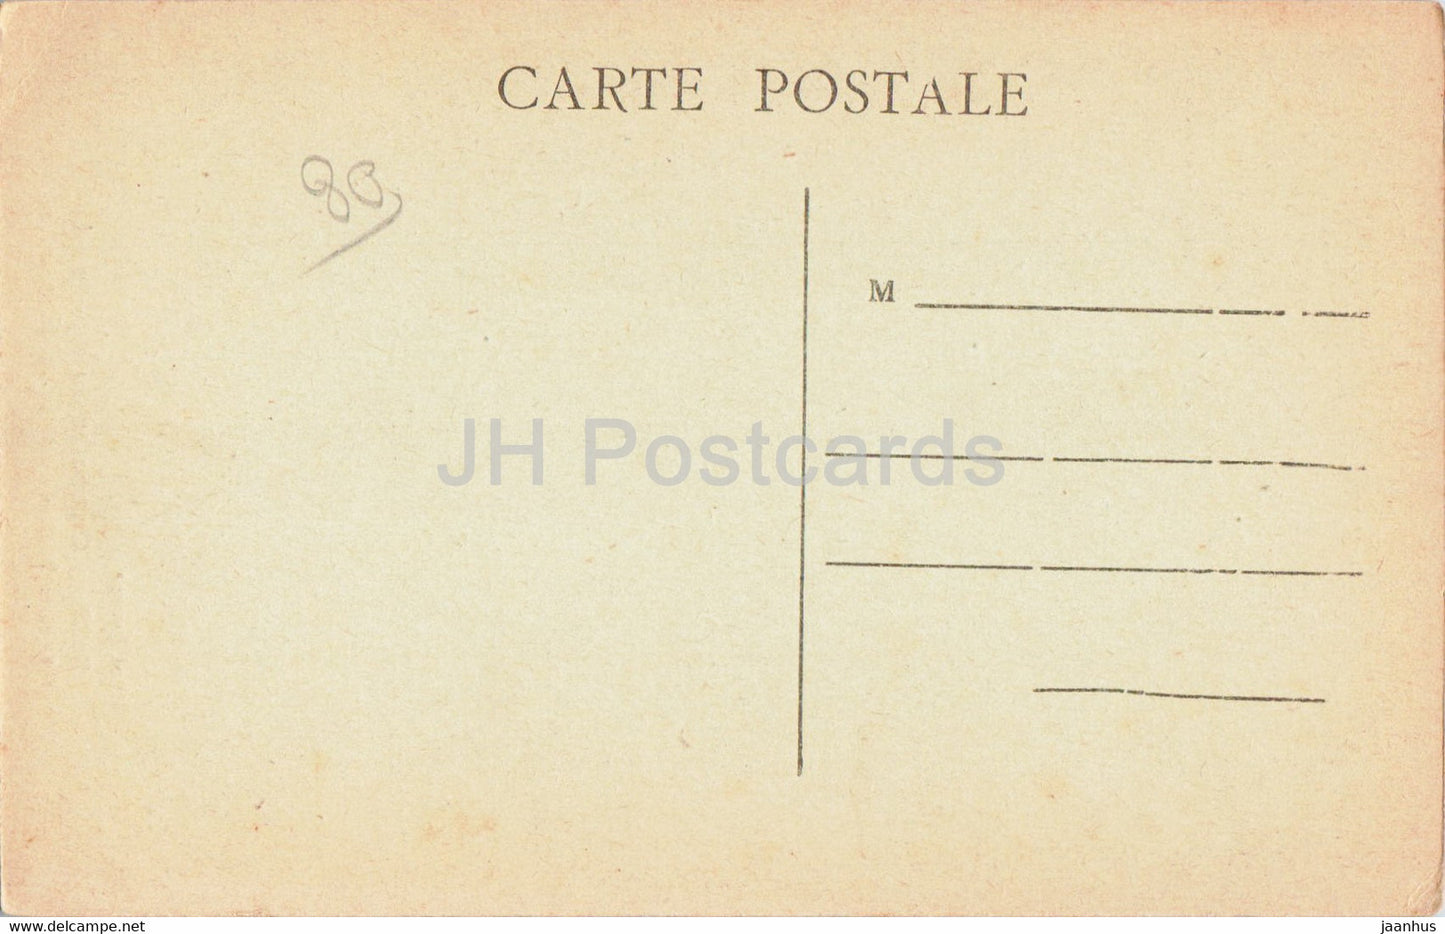 Rue - Chapelle du St Esprit - Portail intérieur de la Chapelle - carte postale ancienne - France - inutilisée